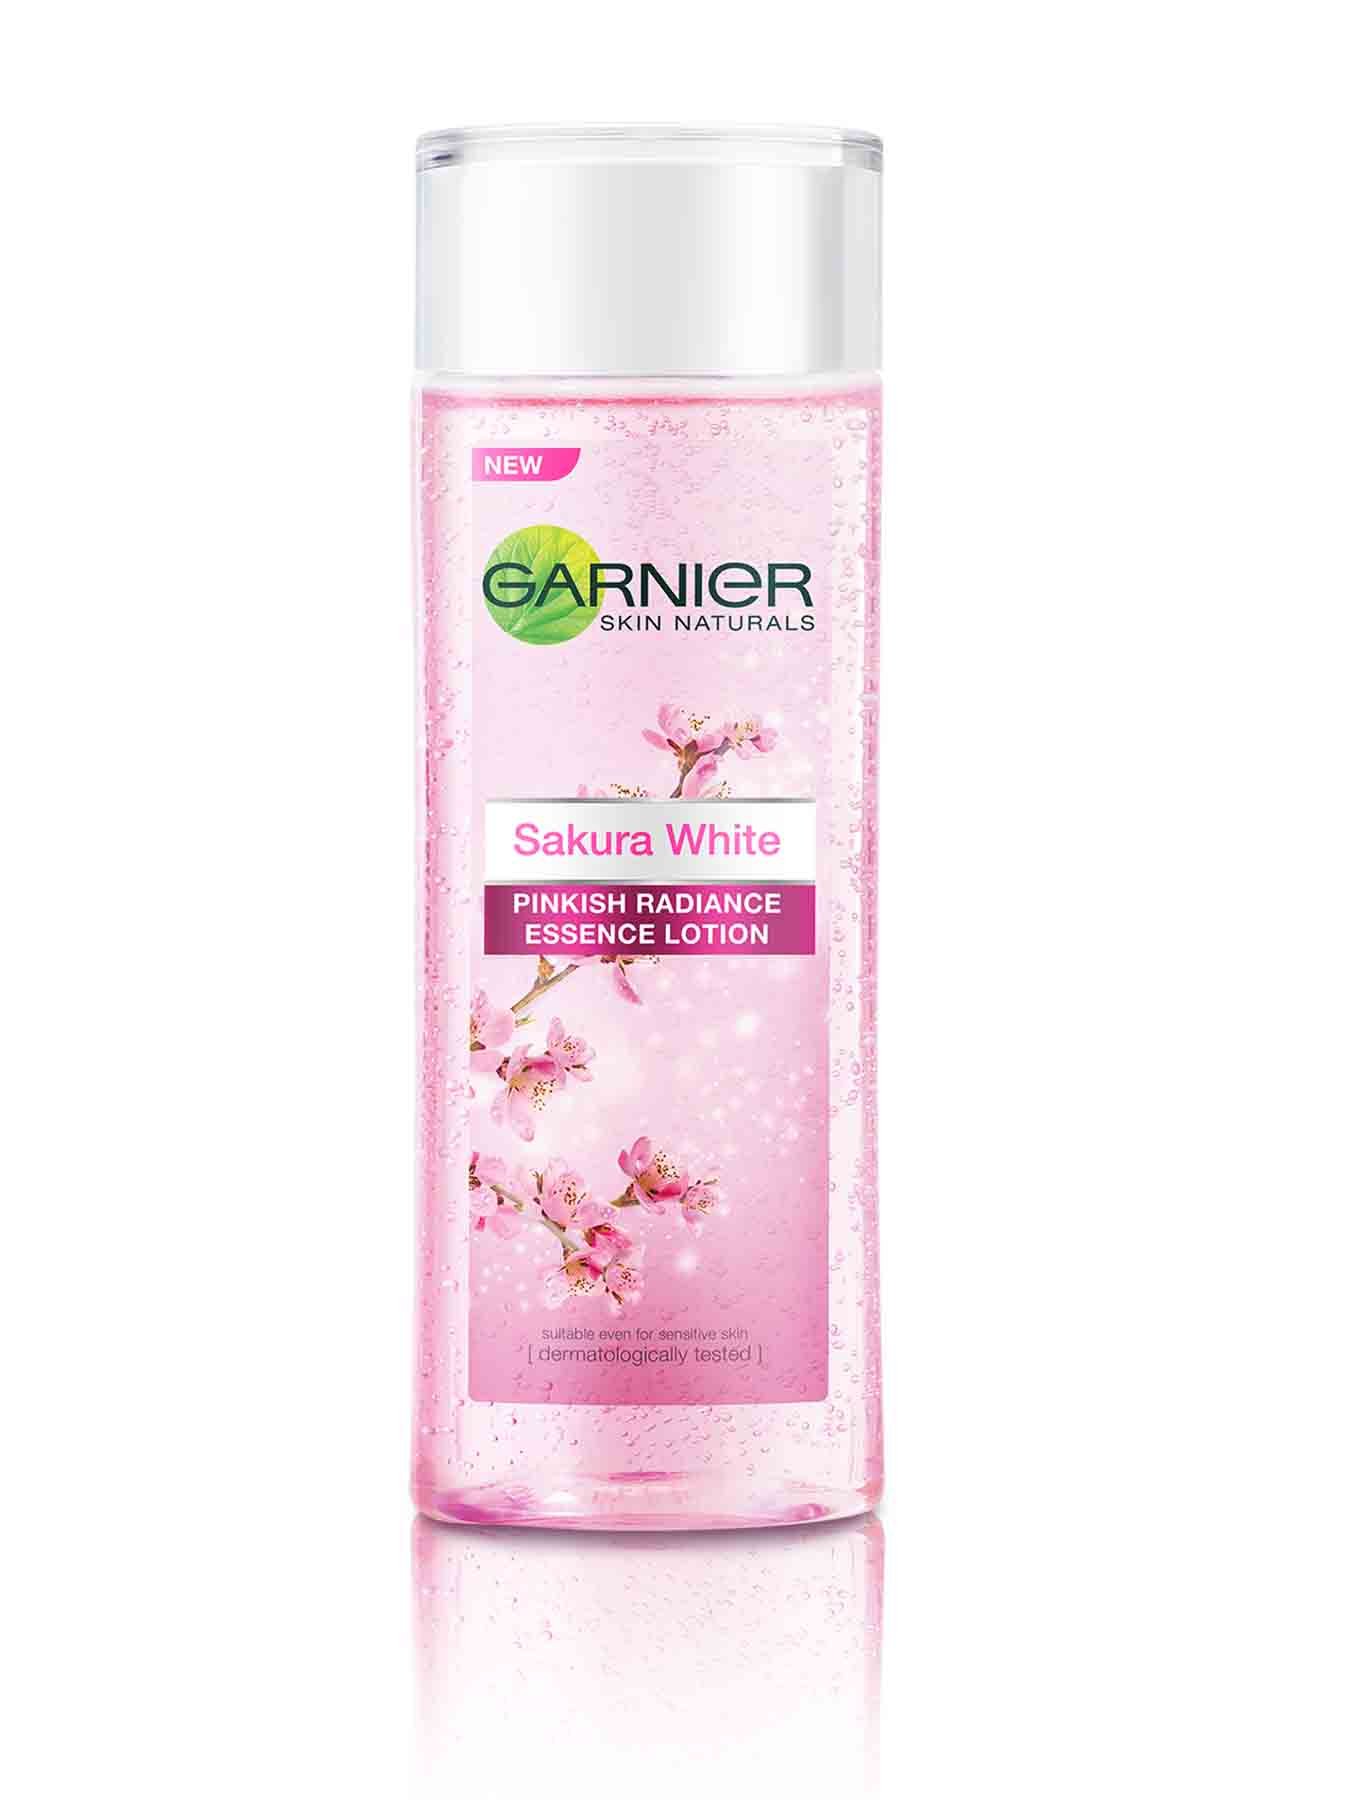 Garnier Sakura White Pinkish Radiance Essence Lotion 120ml